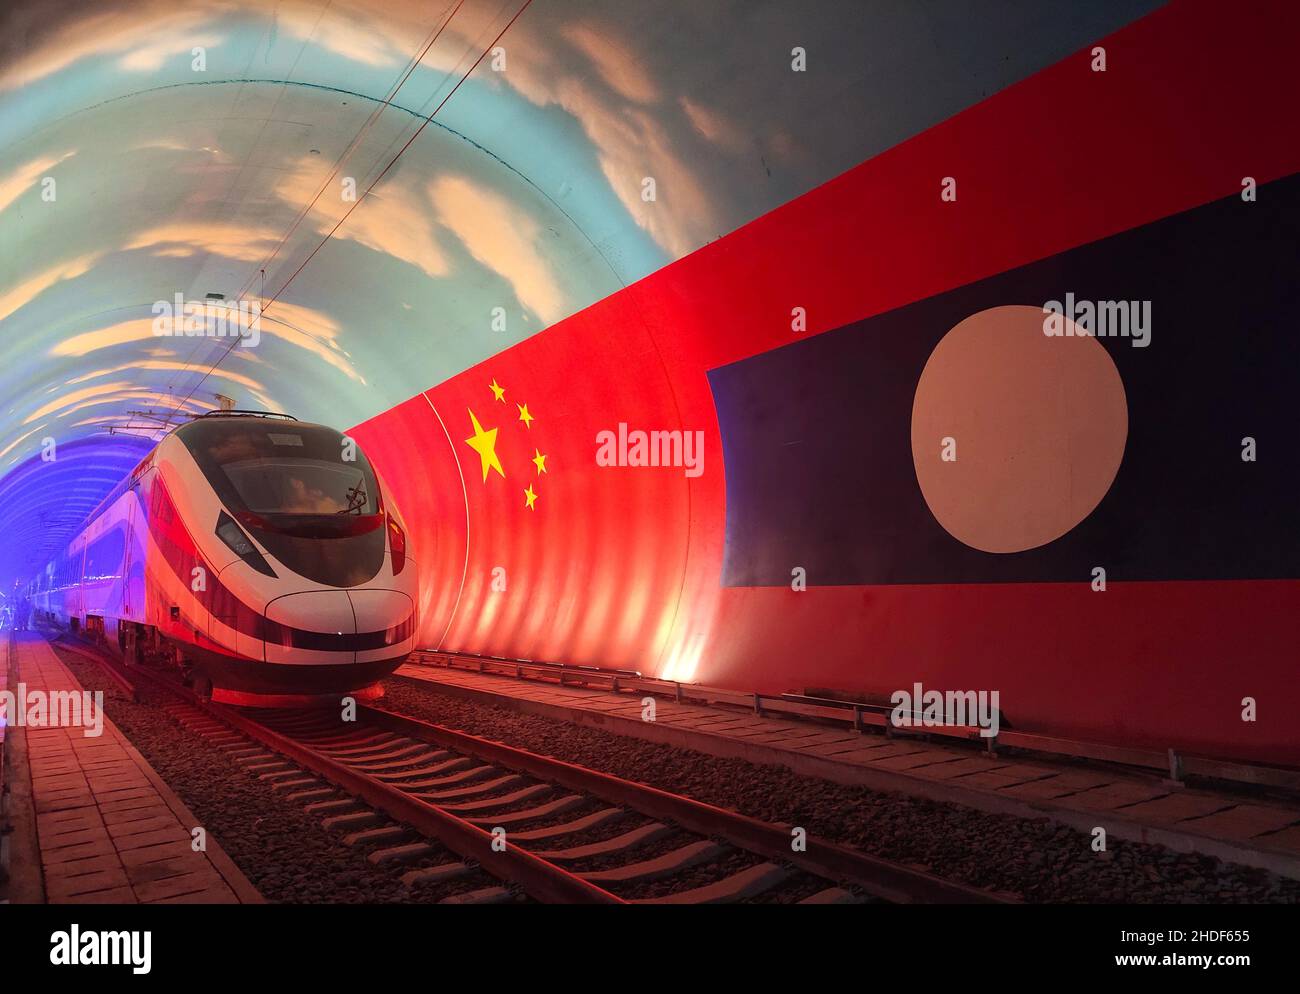 (220106) -- PEKING, 6. Januar 2022 (Xinhua) -- der elektrische Mehreinheit-Zug Lane Xang fährt durch die Grenze zwischen China und Laos in einem Tunnel, 15. Oktober 2021. Die 1.035 km lange China-Laos-Bahn nahm am 3. Dezember 2021 ihren Betrieb auf. (Foto von Cao Anning/Xinhua) Stockfoto